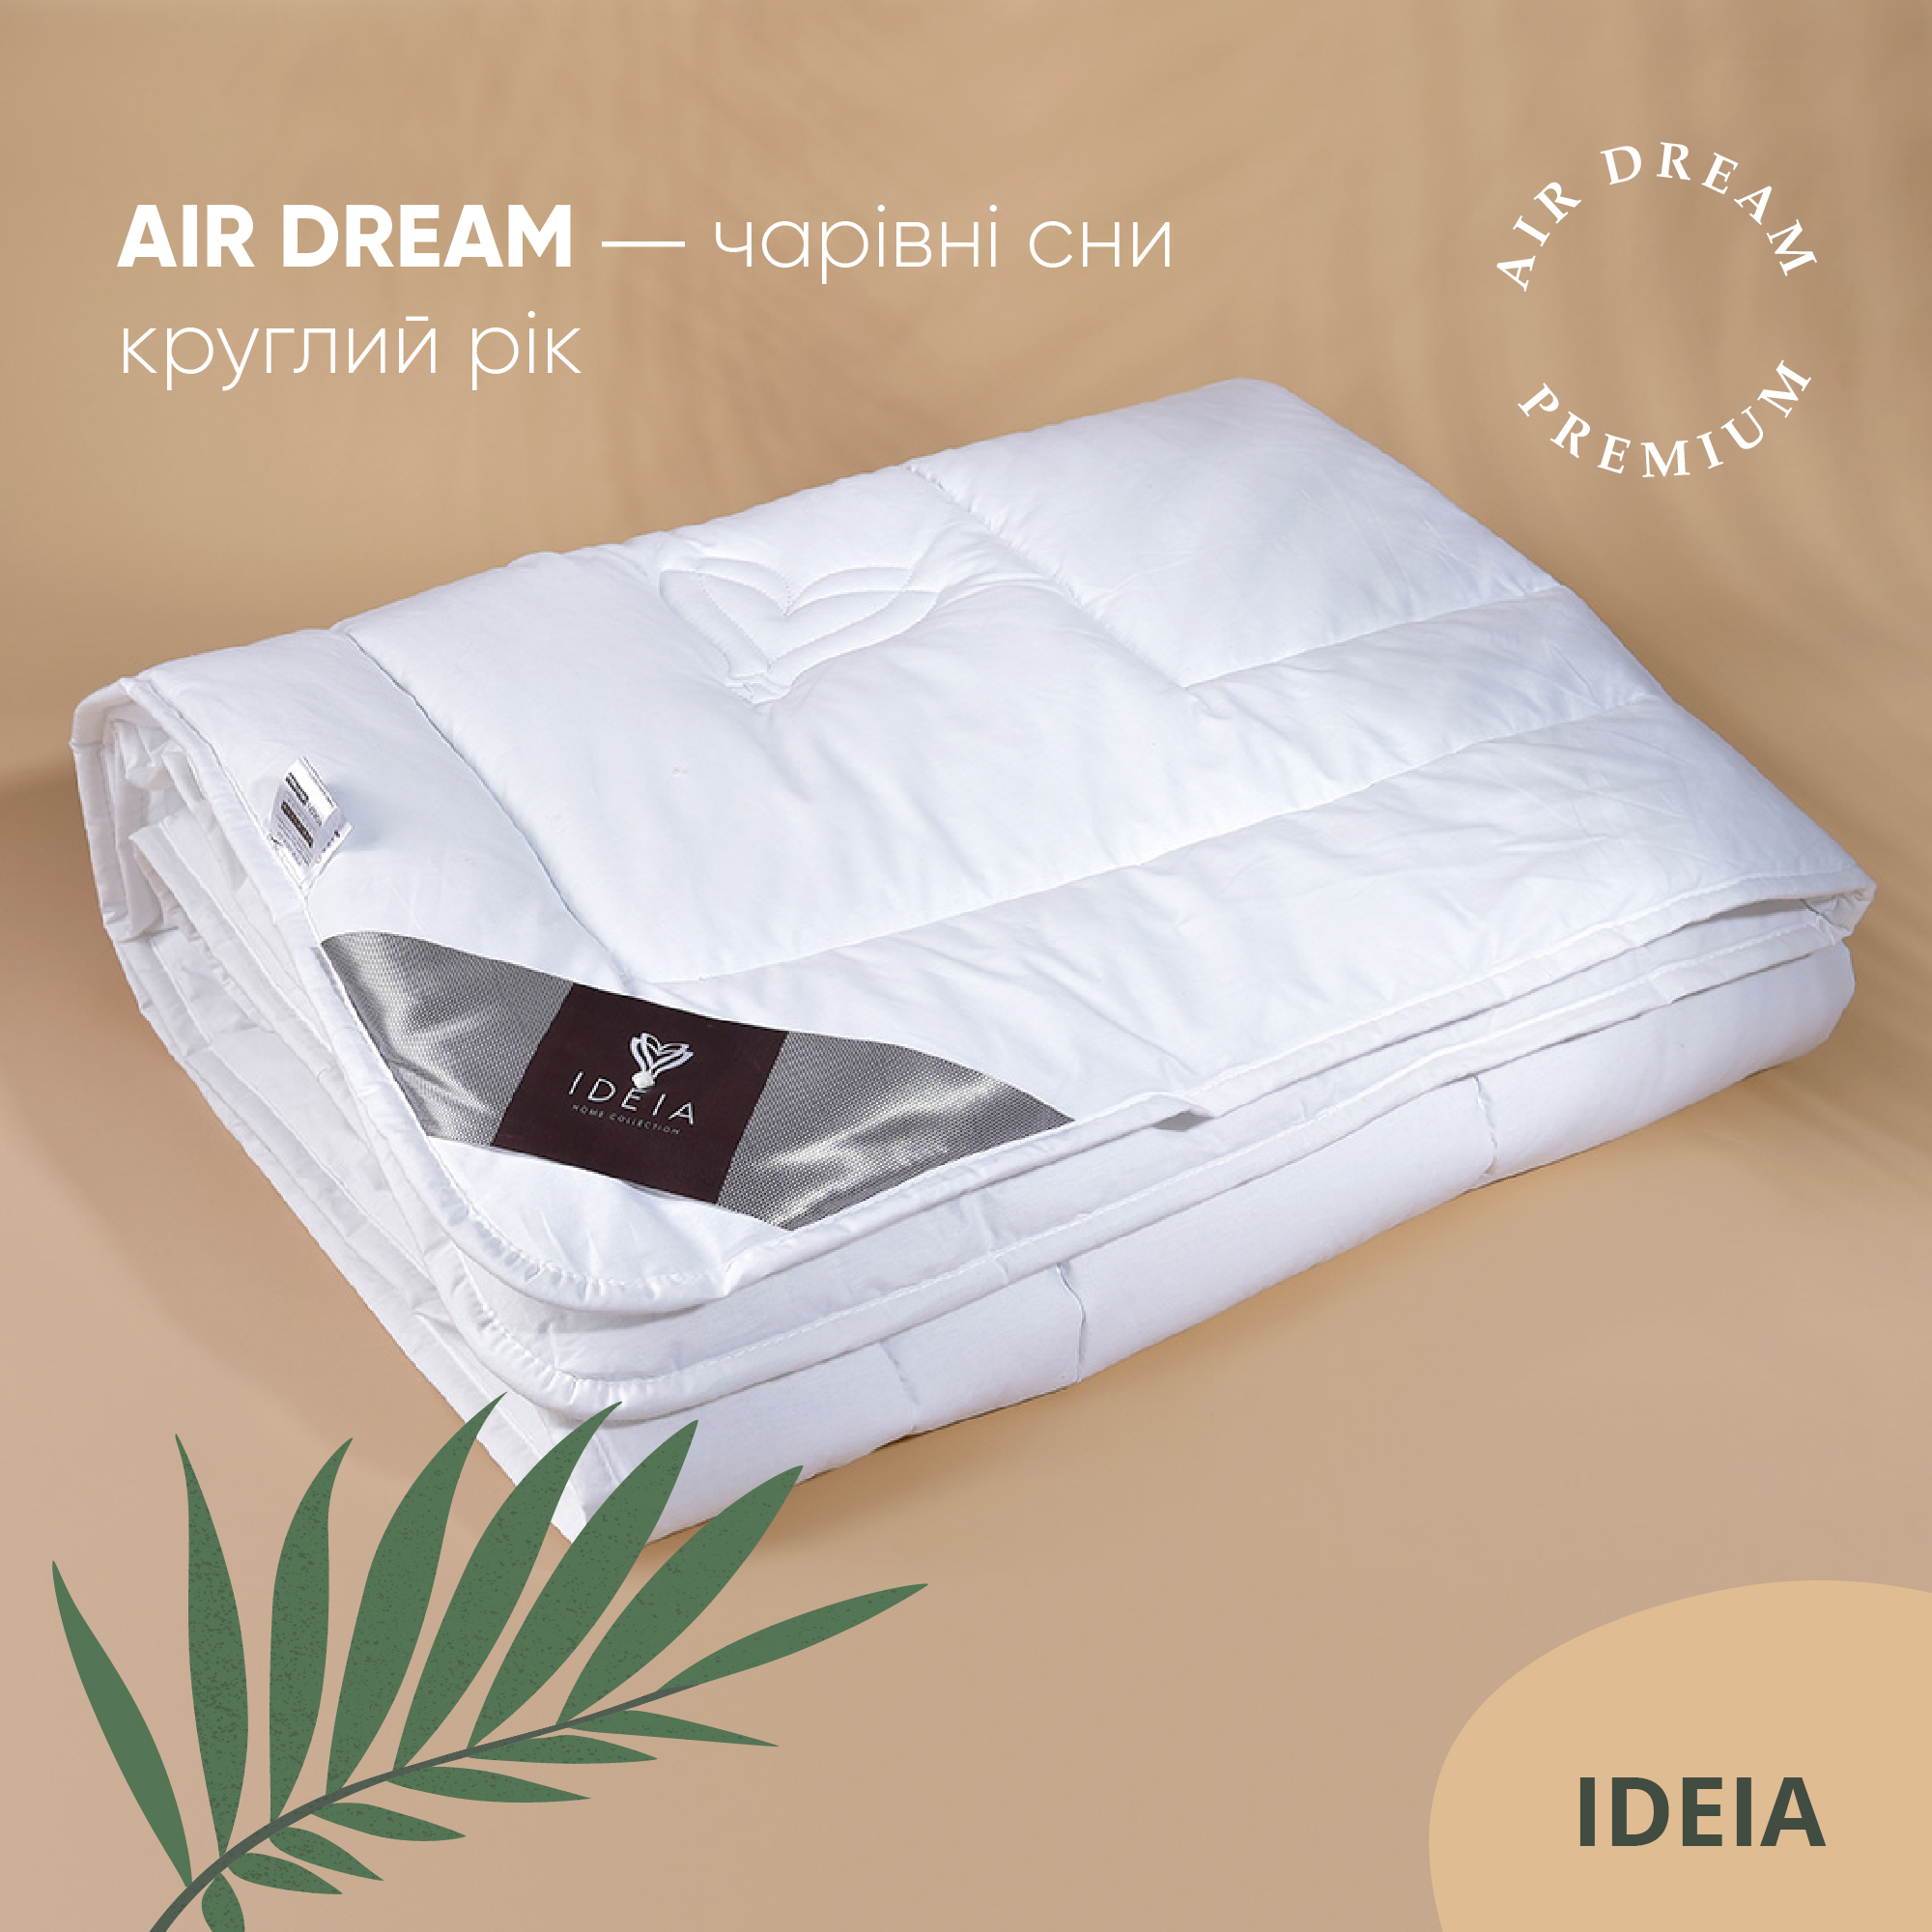 Одеяло Ideia Air Dream Premium зимнее, 210х175, белый (8-11698) - фото 8